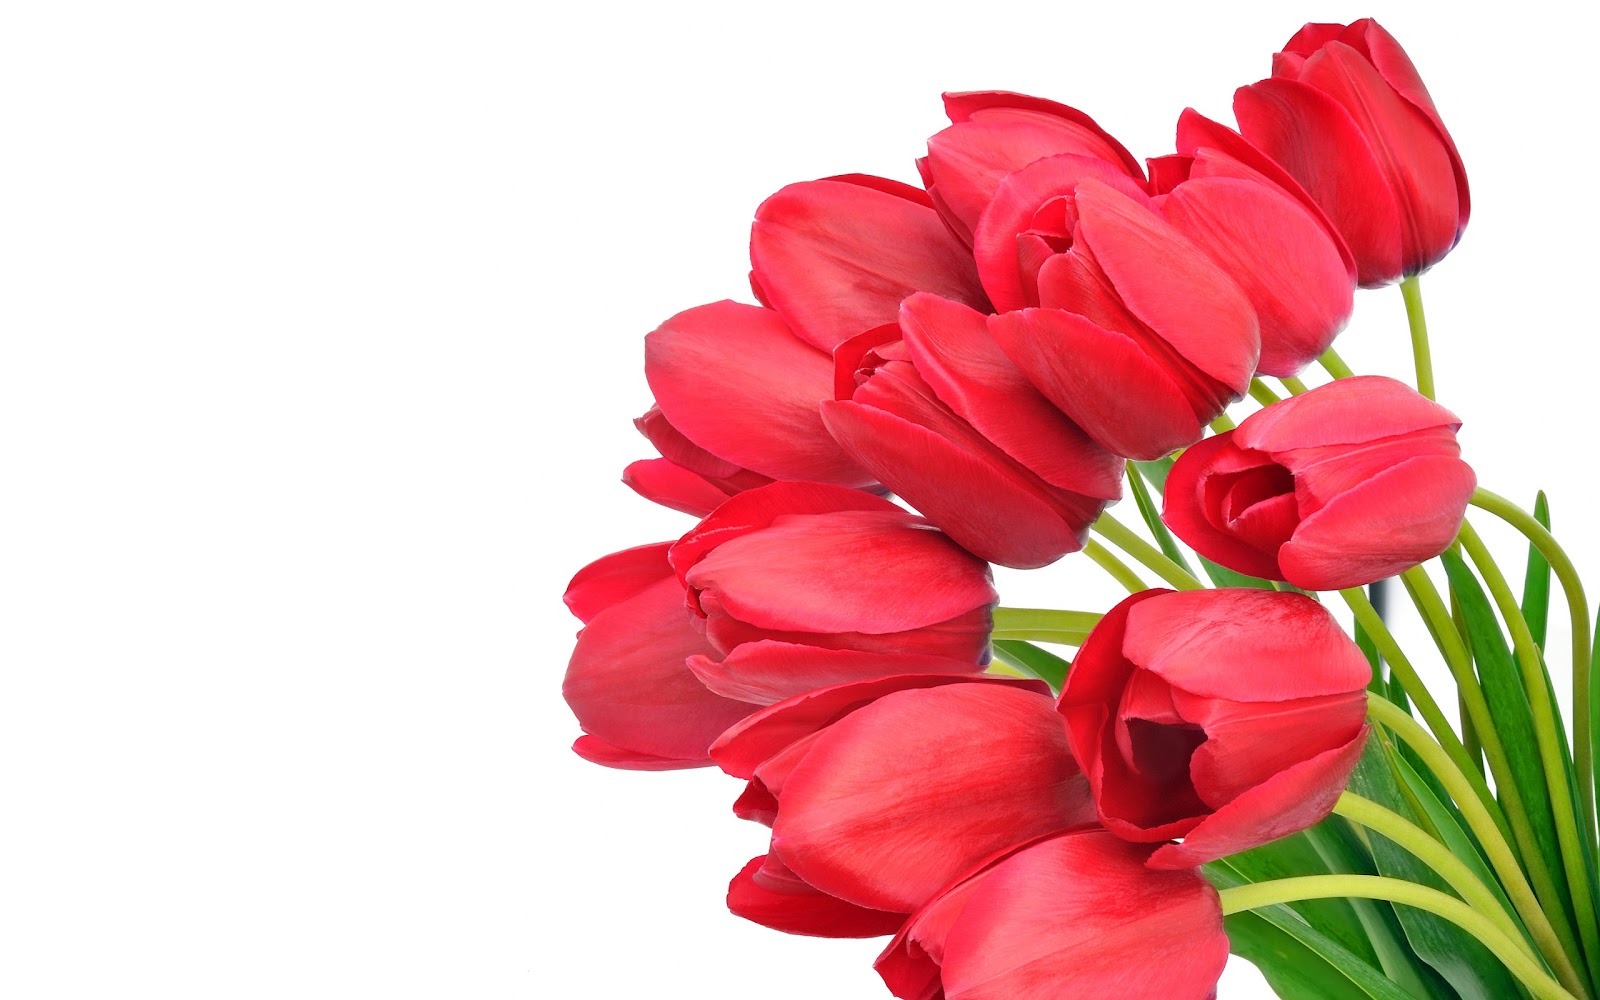 sfondi di fiori più recenti,fiore,pianta fiorita,petalo,rosso,tulipano